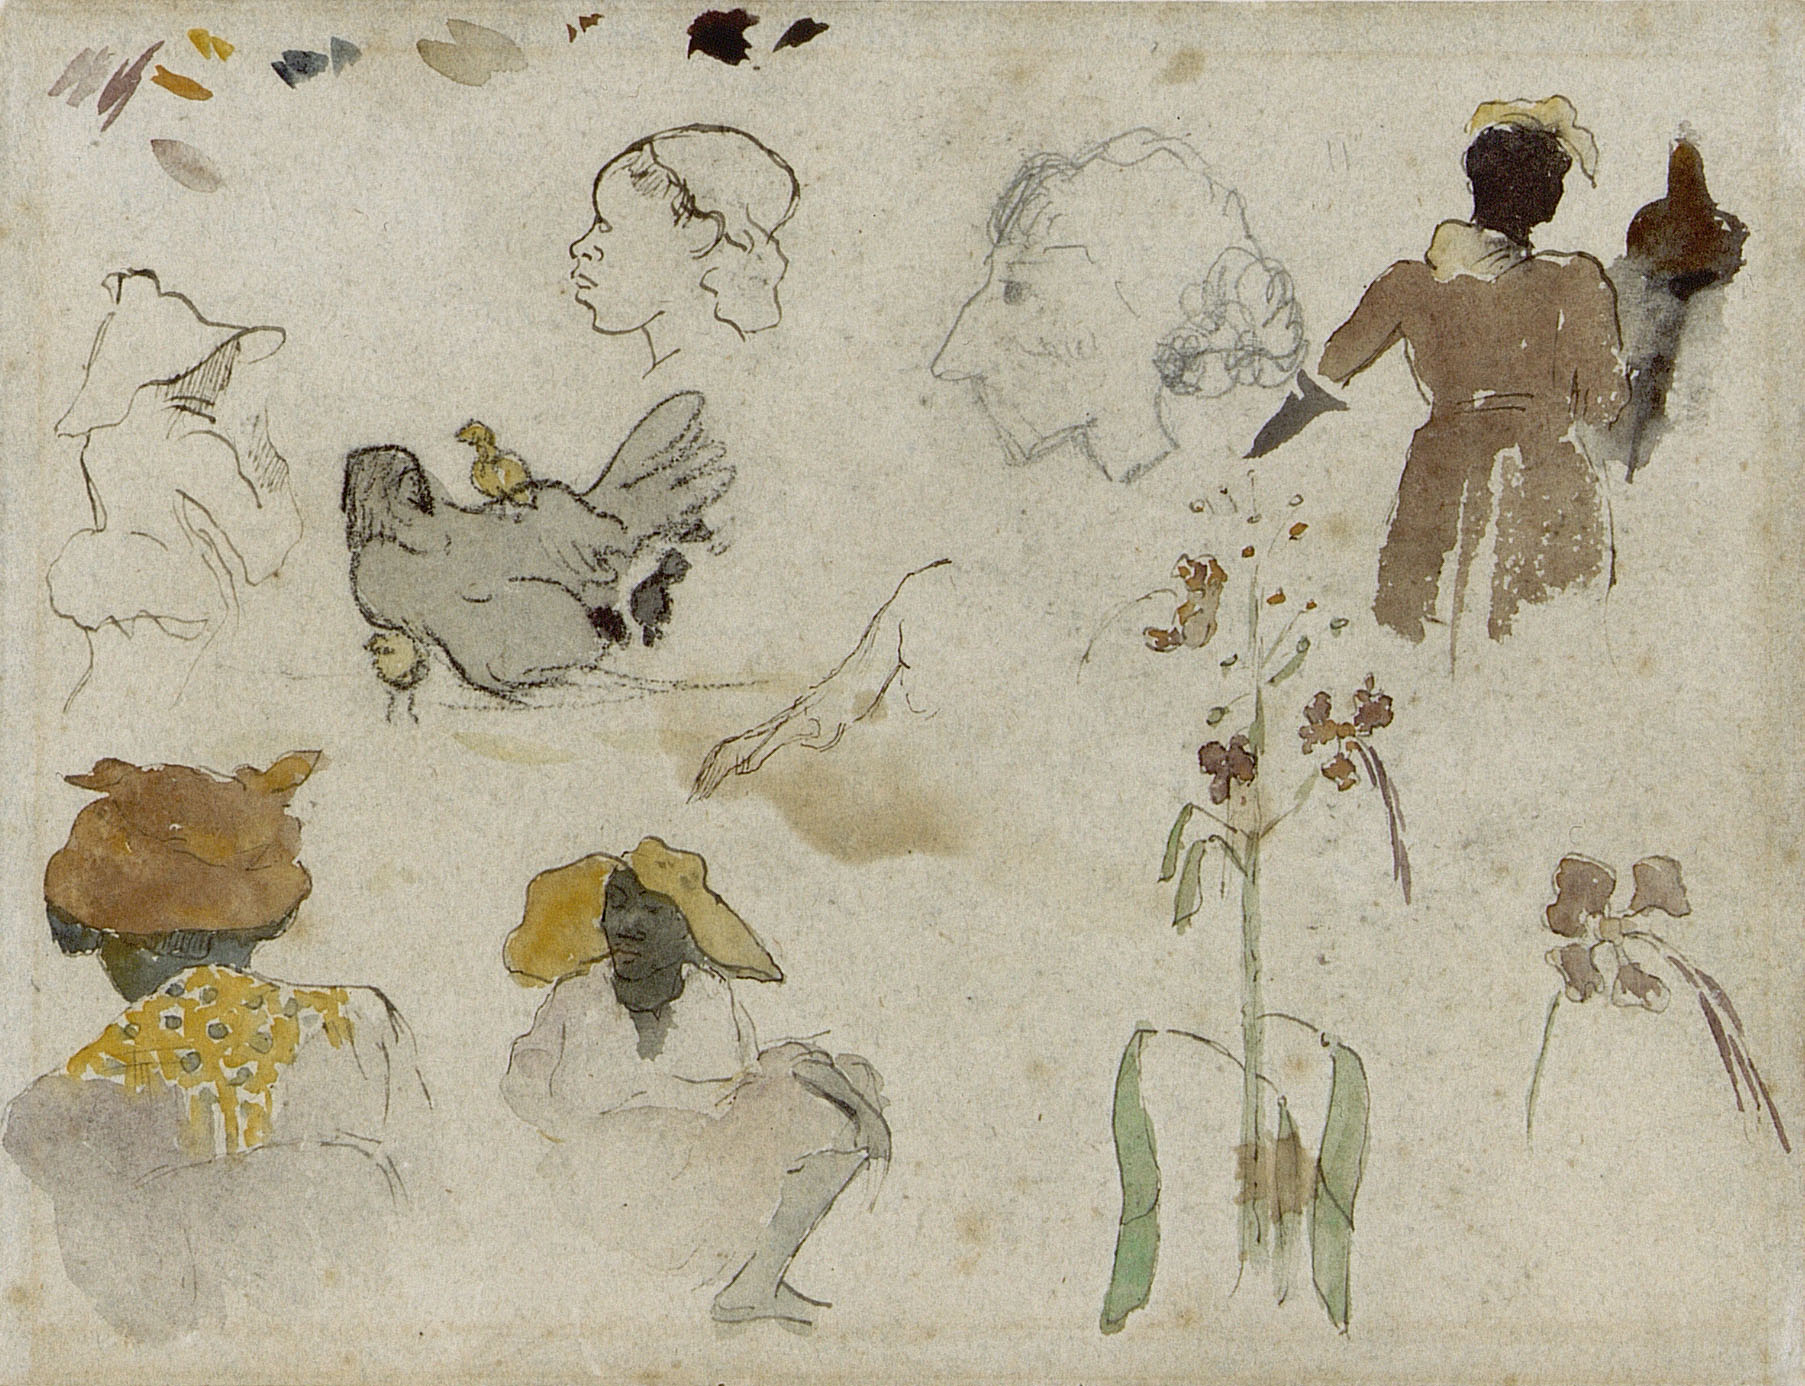 几个人物、花卉和动物的素描 by 保罗 高更 - 1887 - 20.4 x 27 cm 梵高博物馆